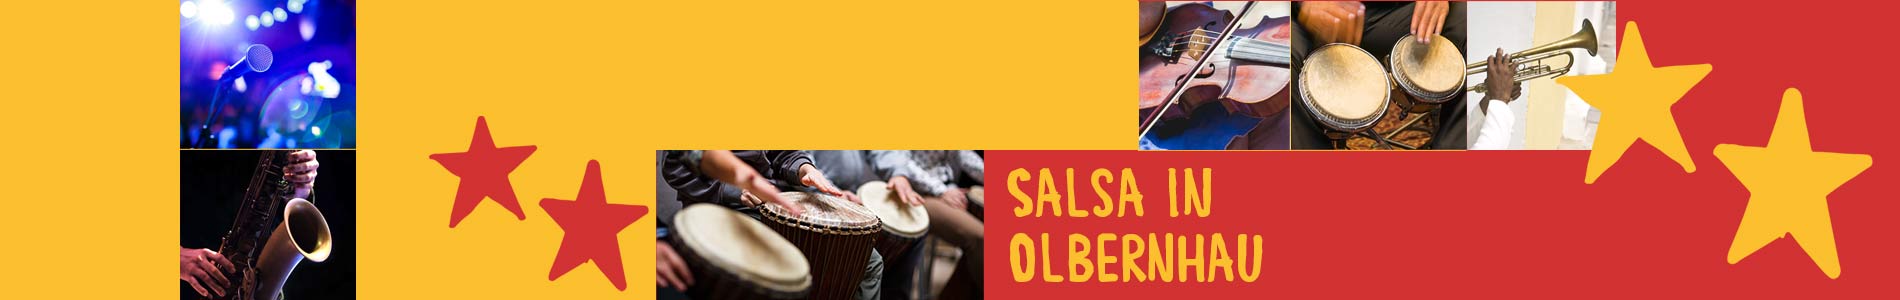 Salsa in Olbernhau – Salsa lernen und tanzen, Tanzkurse, Partys, Veranstaltungen